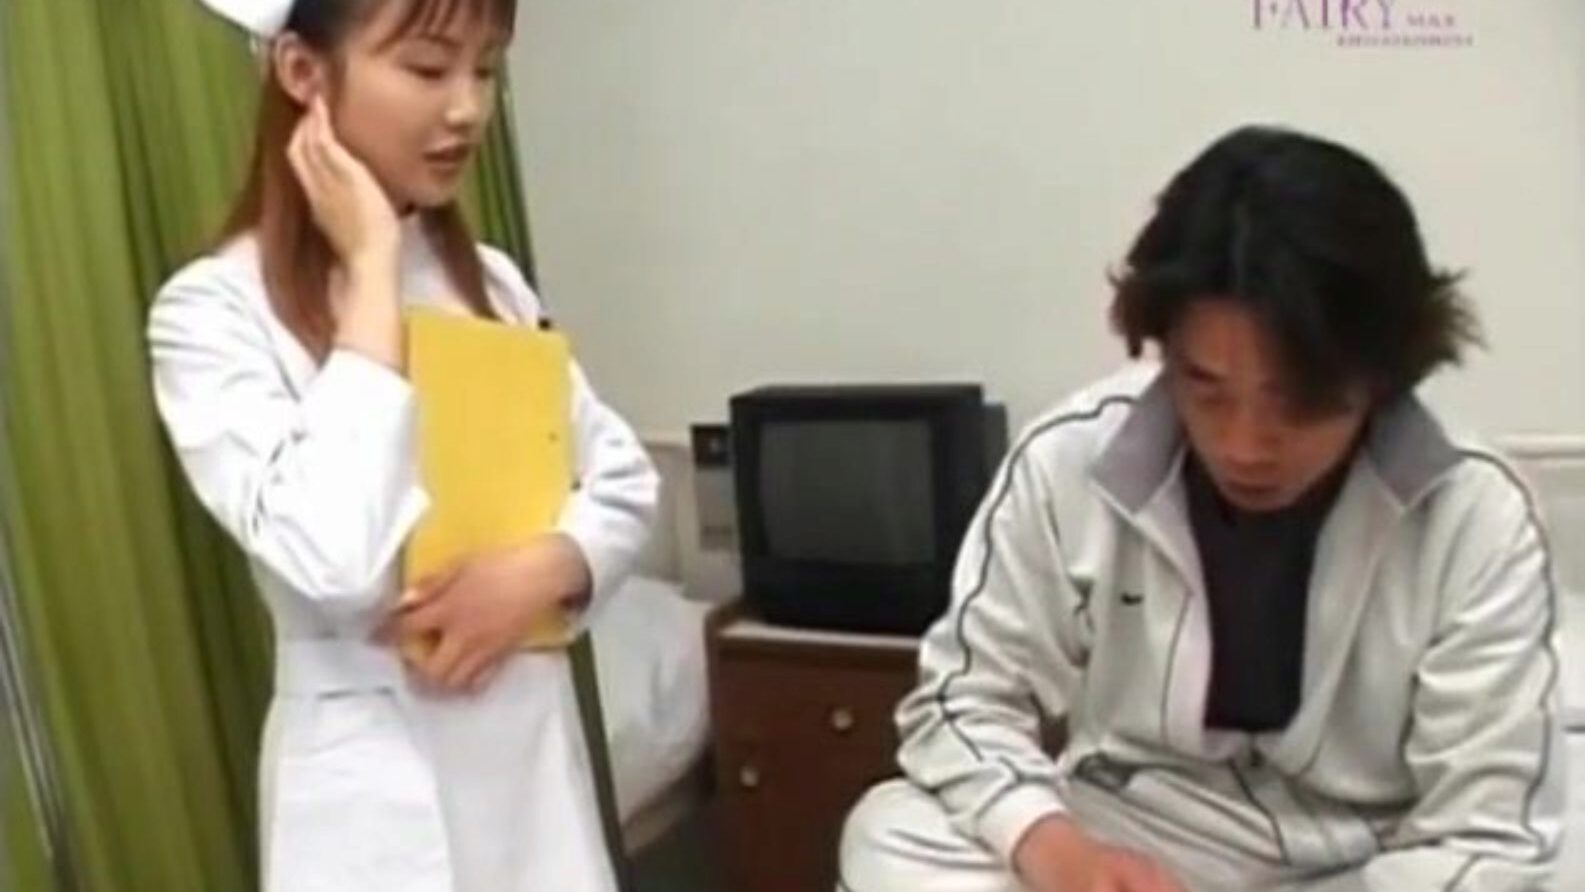 rina usui droljava sestra vodi pacijenta schlongom u rupu za lice i - više na hotajp com